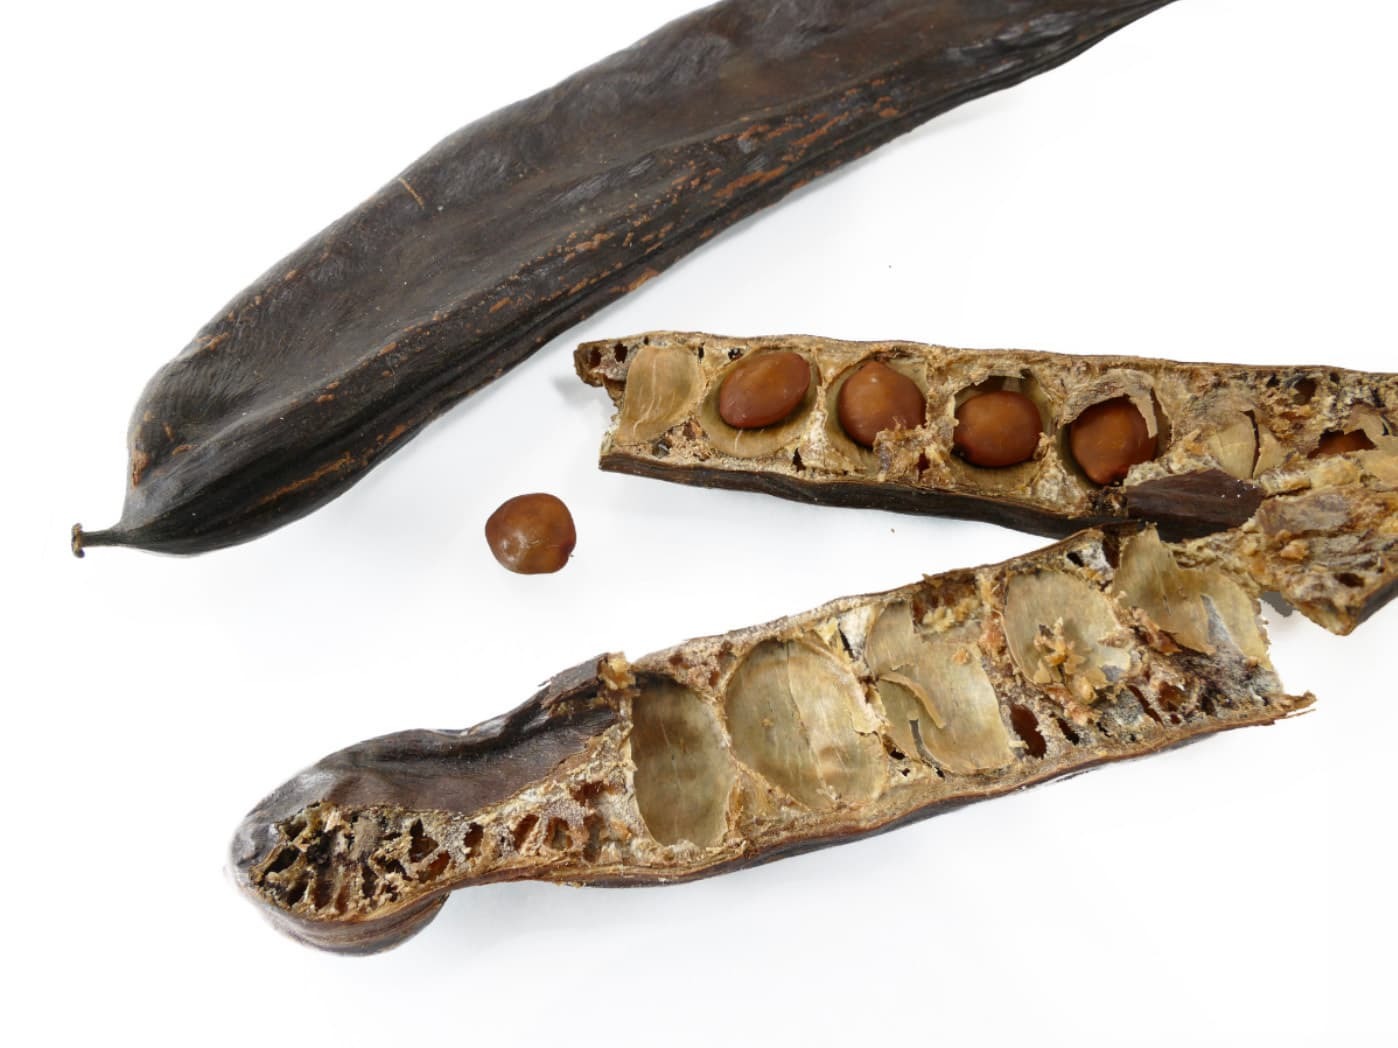 克拉源自於希臘語角豆樹的意思，角豆樹的種子每顆大約就是200毫克。